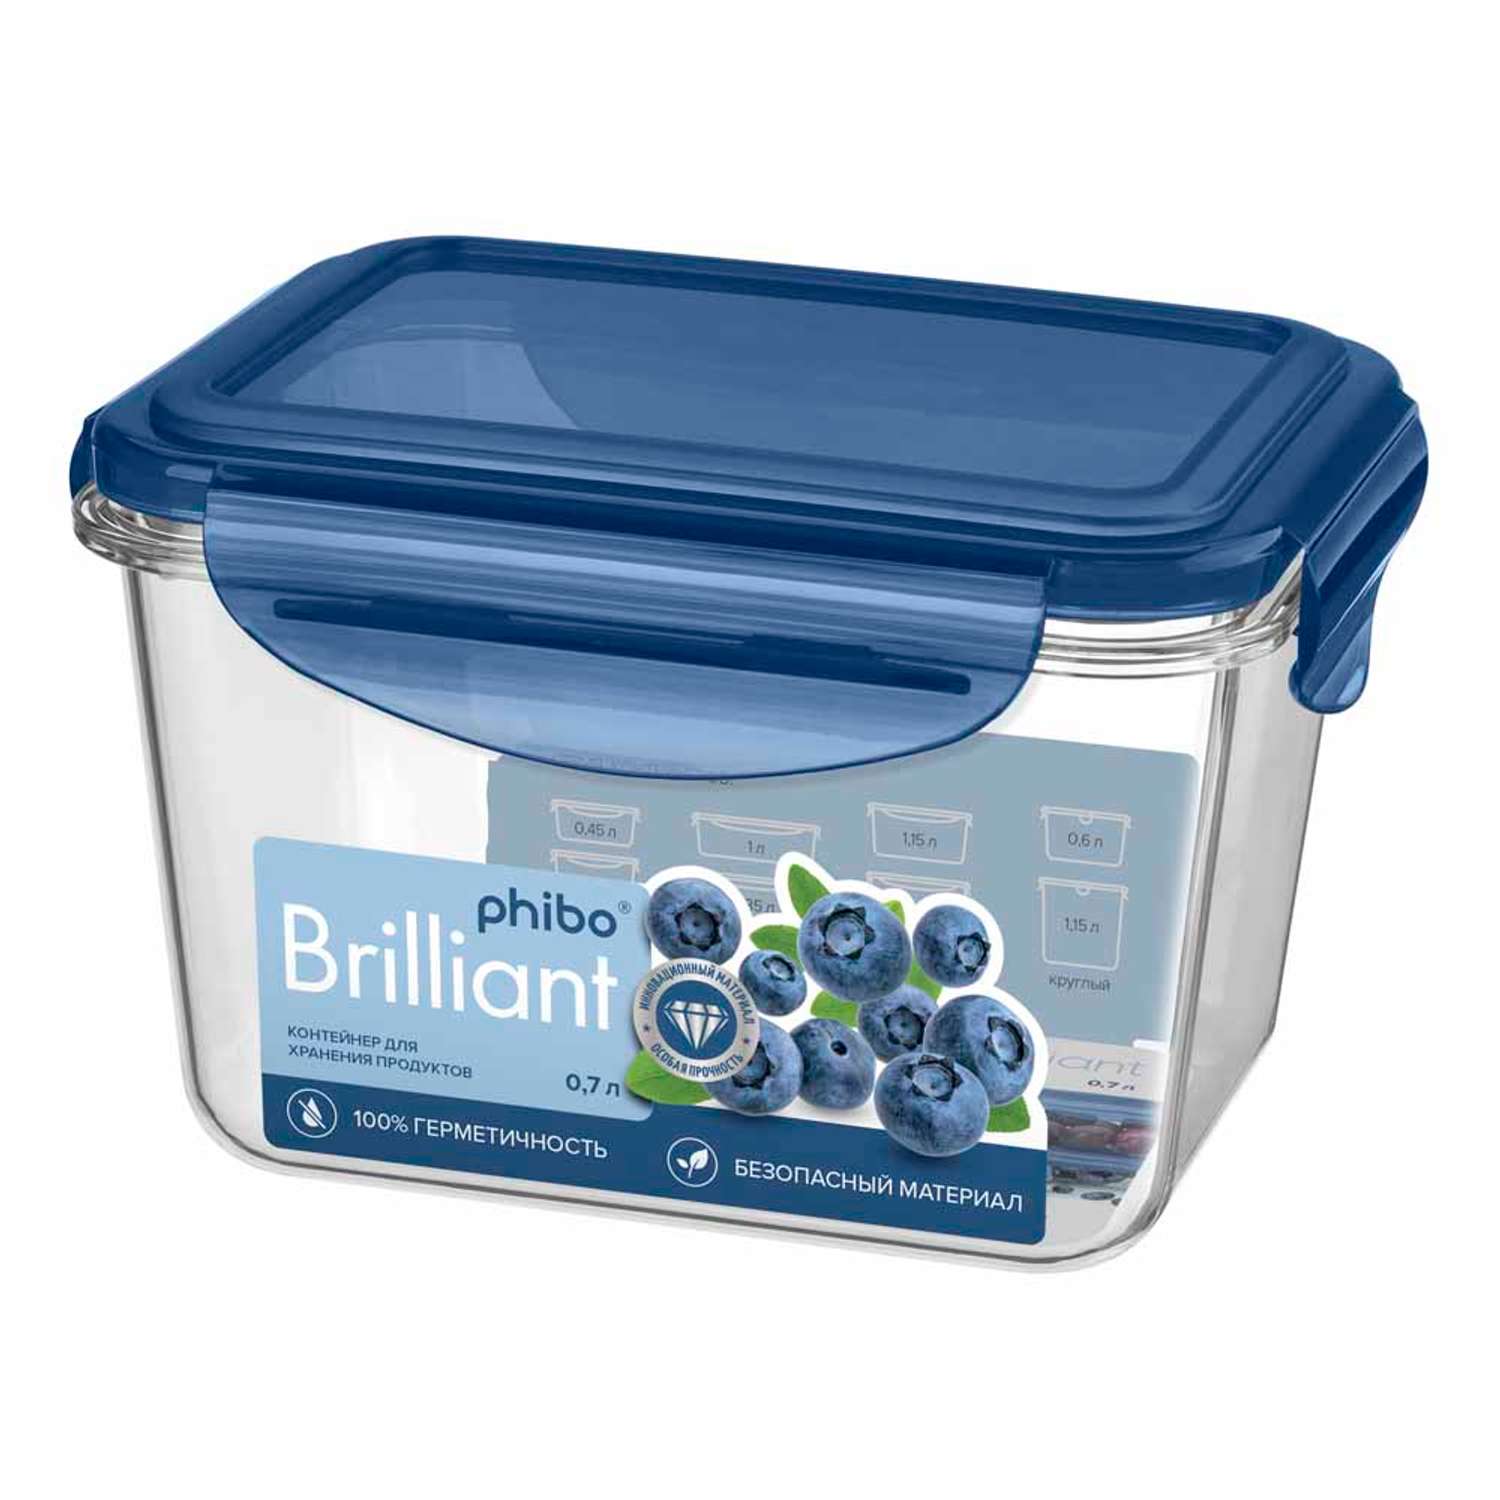 Контейнер Phibo для продуктов герметичный Brilliant прямоугольный 0.7л синий - фото 1